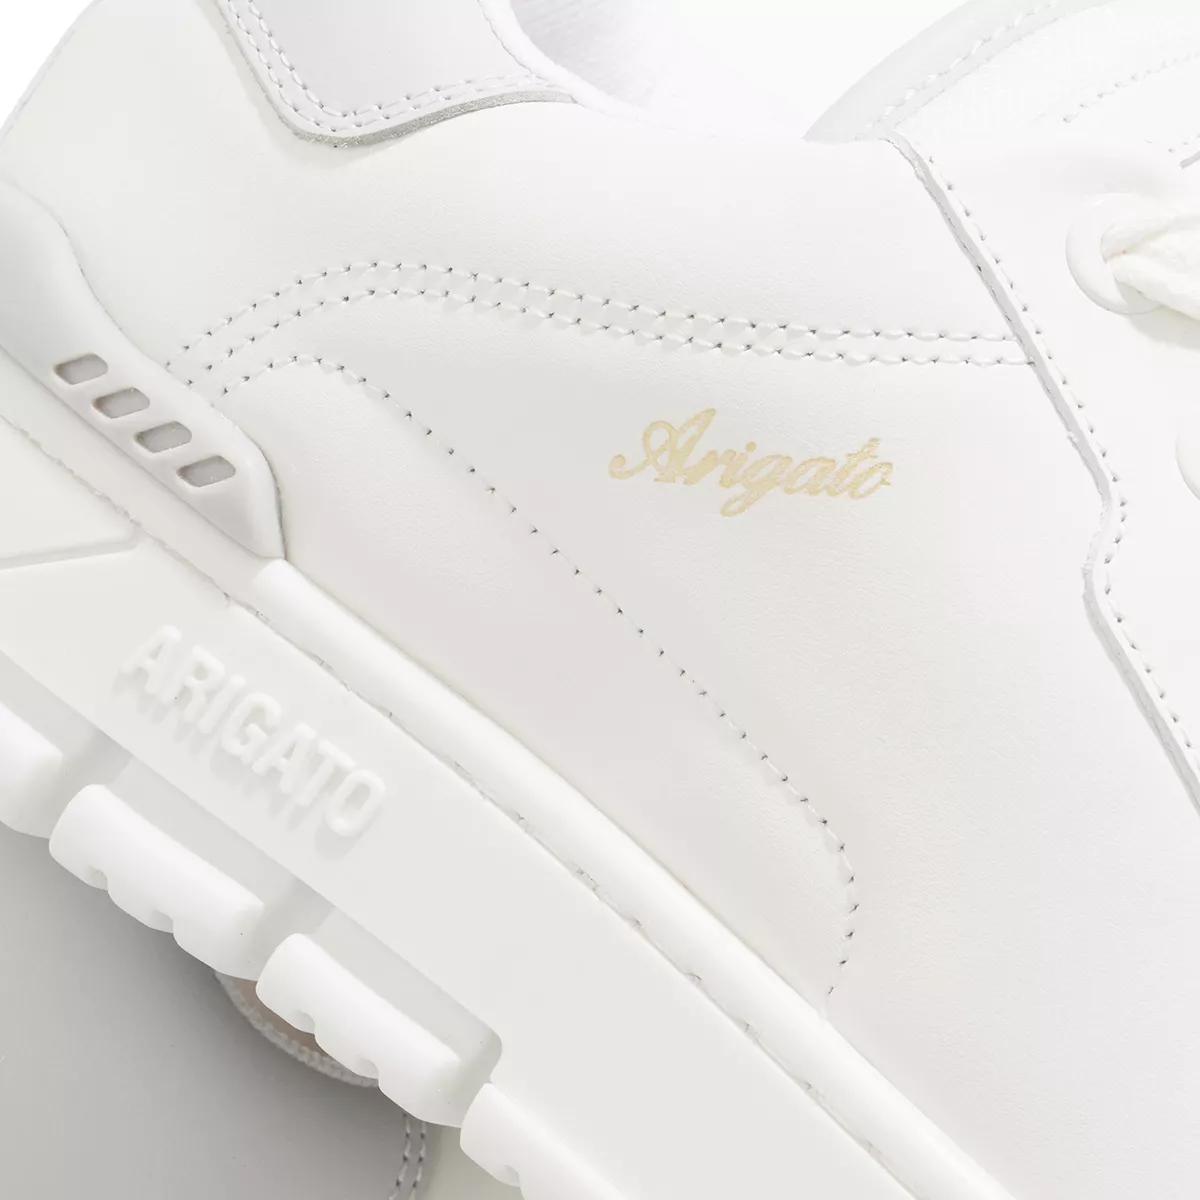 Axel Arigato Sneakers - Area Haze Sneaker - Gr. 37 (EU) - in Weiß - für Damen von Axel Arigato